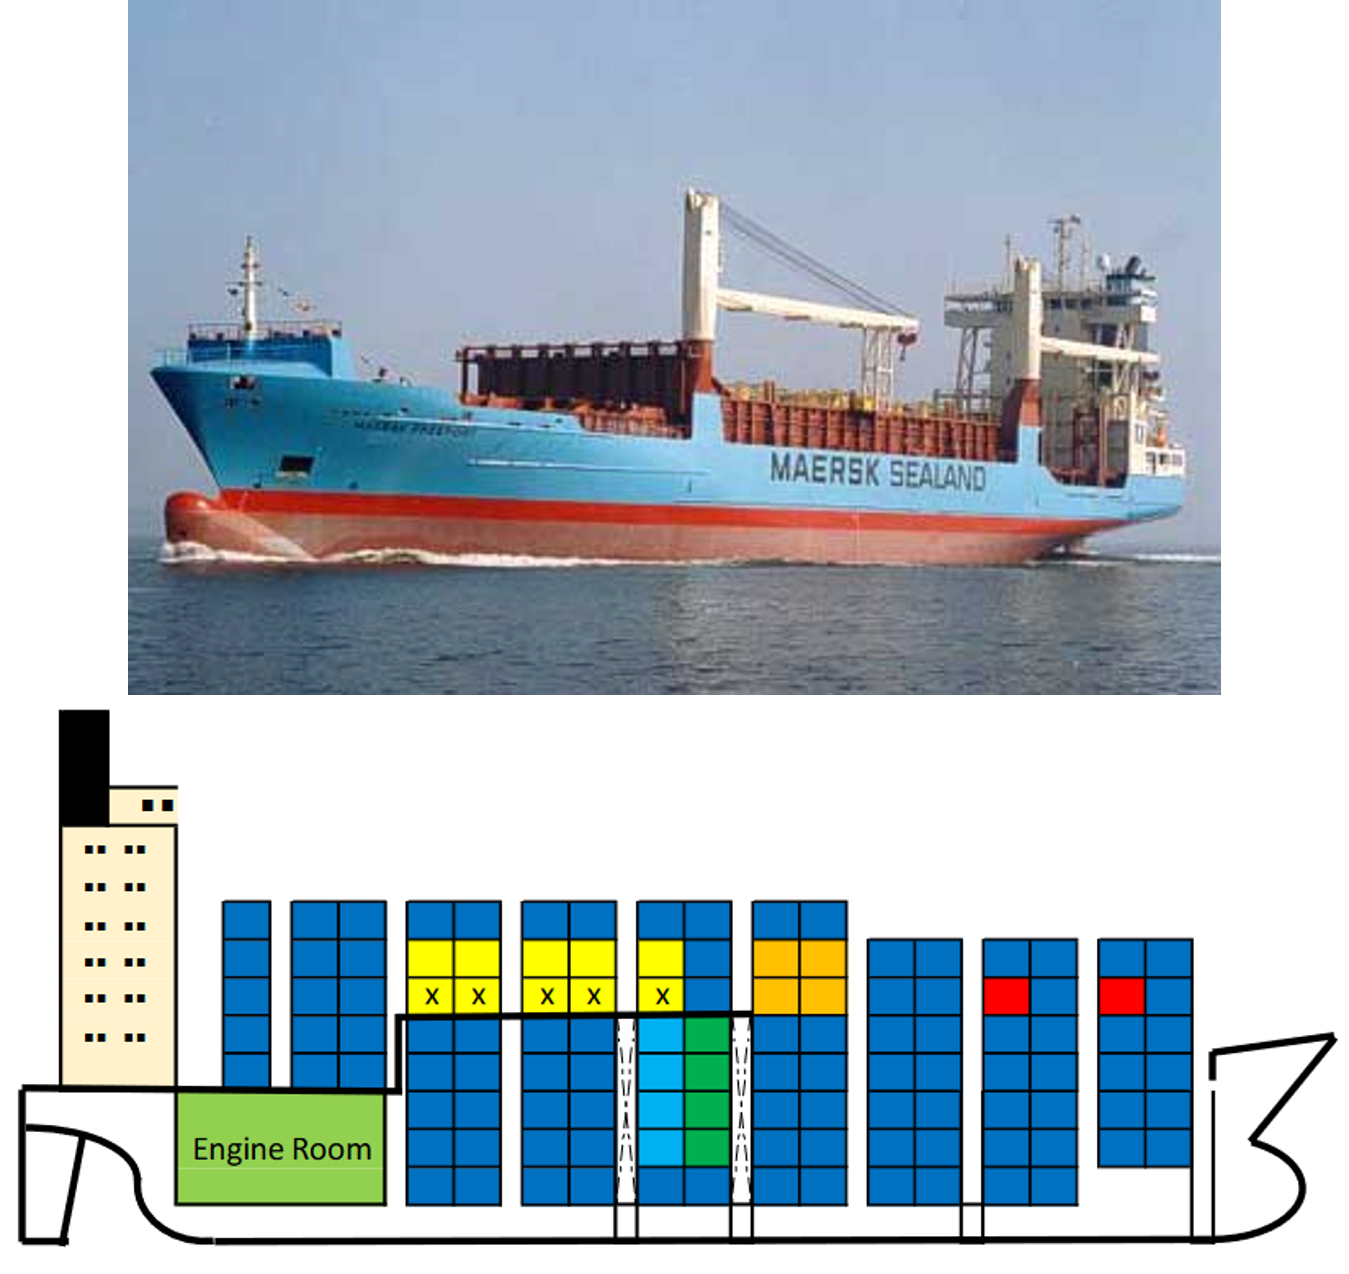 Feeder container ship < 3,000 TEU